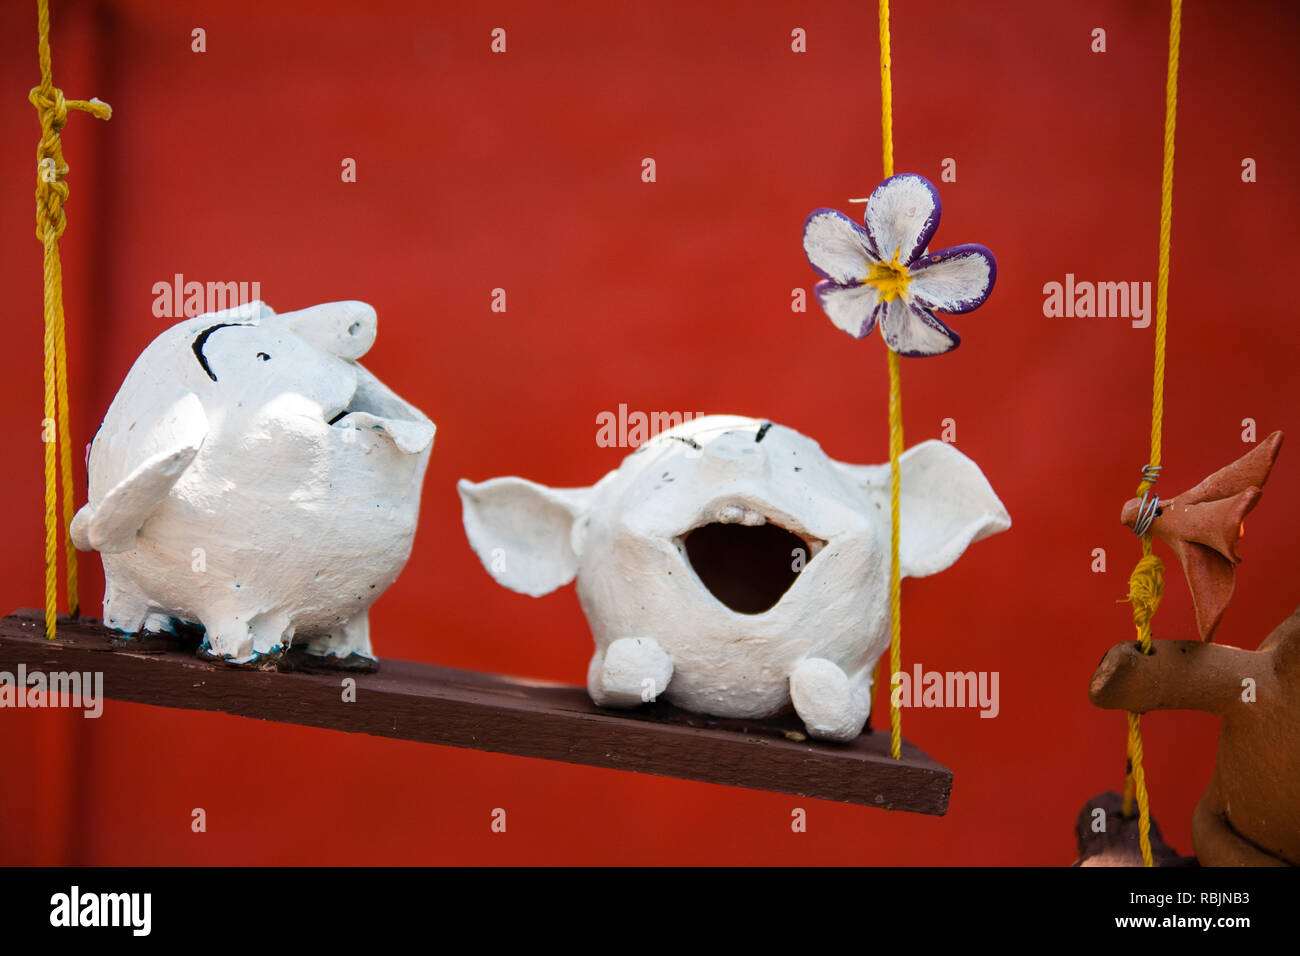 Deux figures d'argile blanche sur une balançoire en face d'un mur rouge Banque D'Images